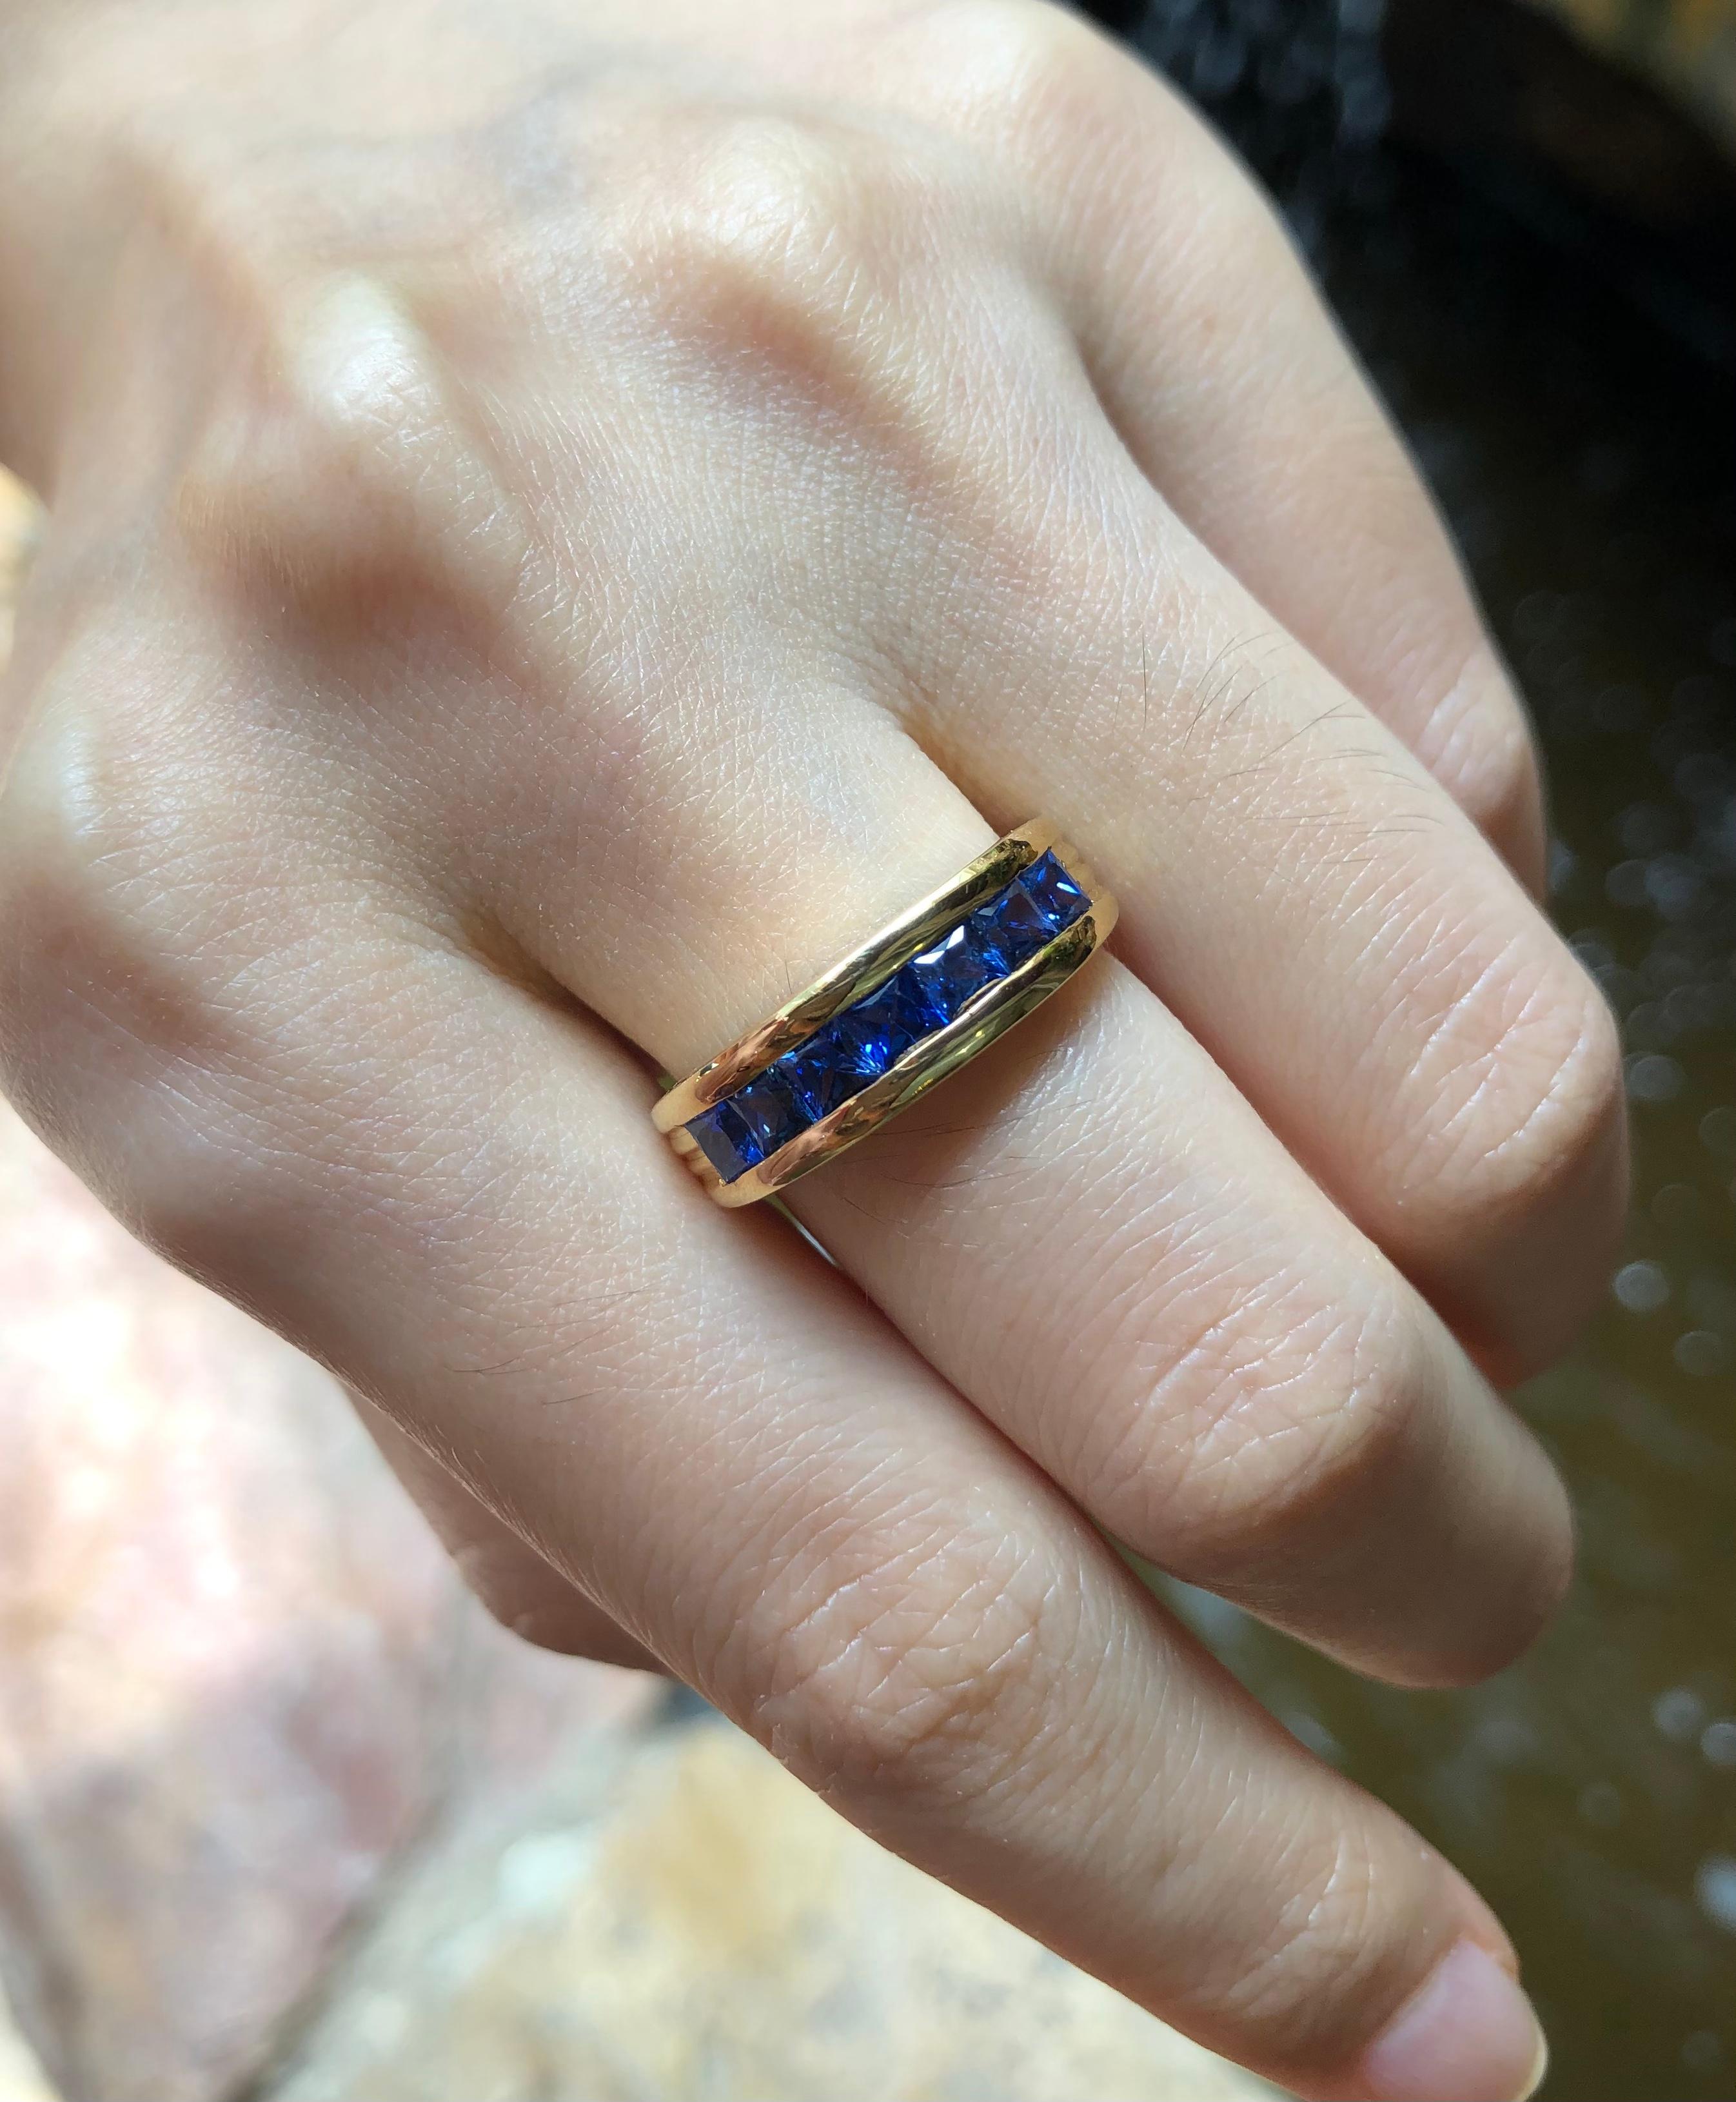 Bague en saphir bleu 1,48 carats sertie d'or 18 carats

Largeur :  2.3 cm 
Longueur : 0,6 cm
Taille de l'anneau : 54
Poids total : 7,55 grammes

